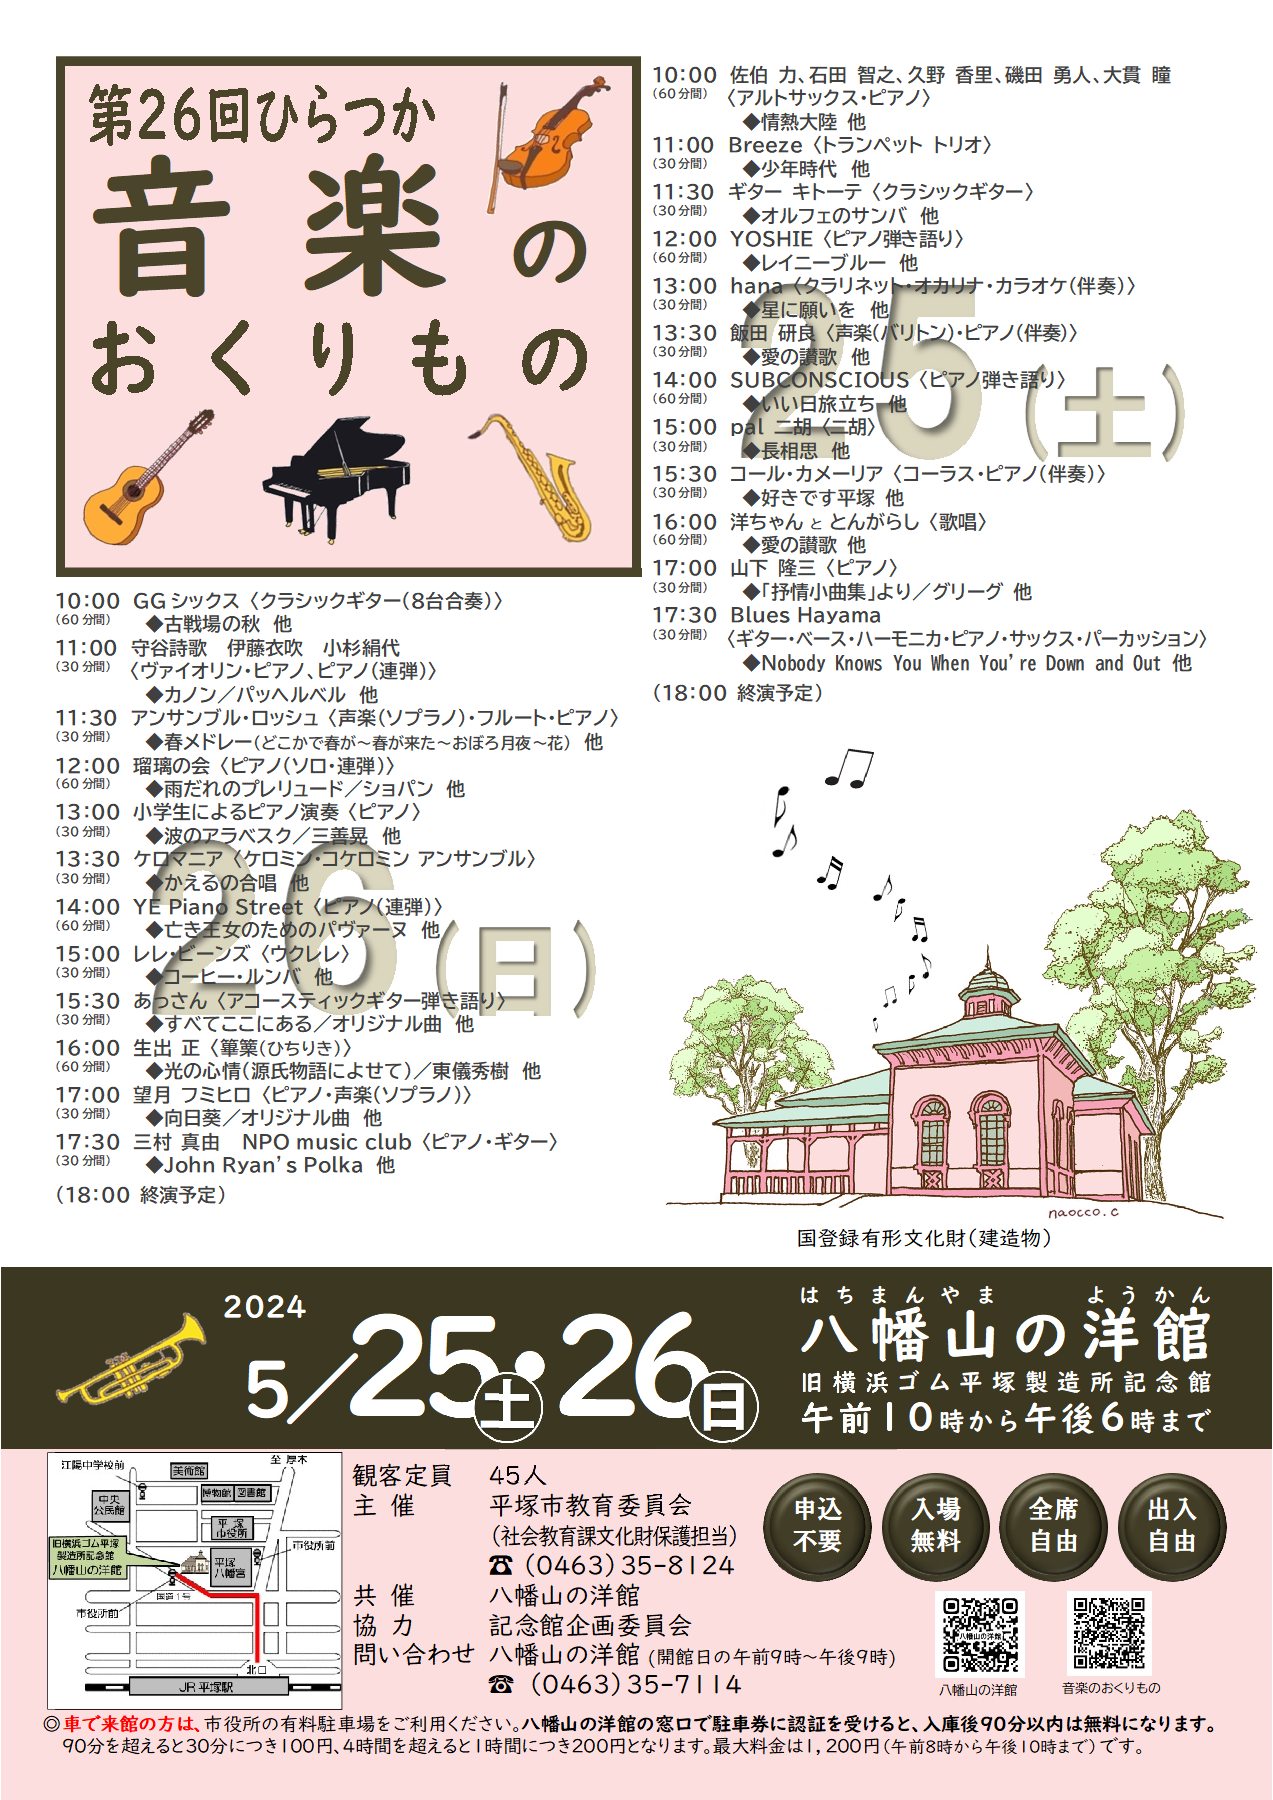 八幡山の洋館「第26回ひらつか音楽のおくりもの」が5月25日土曜日、26日日曜日に開催されます。両日で24組が出演します。